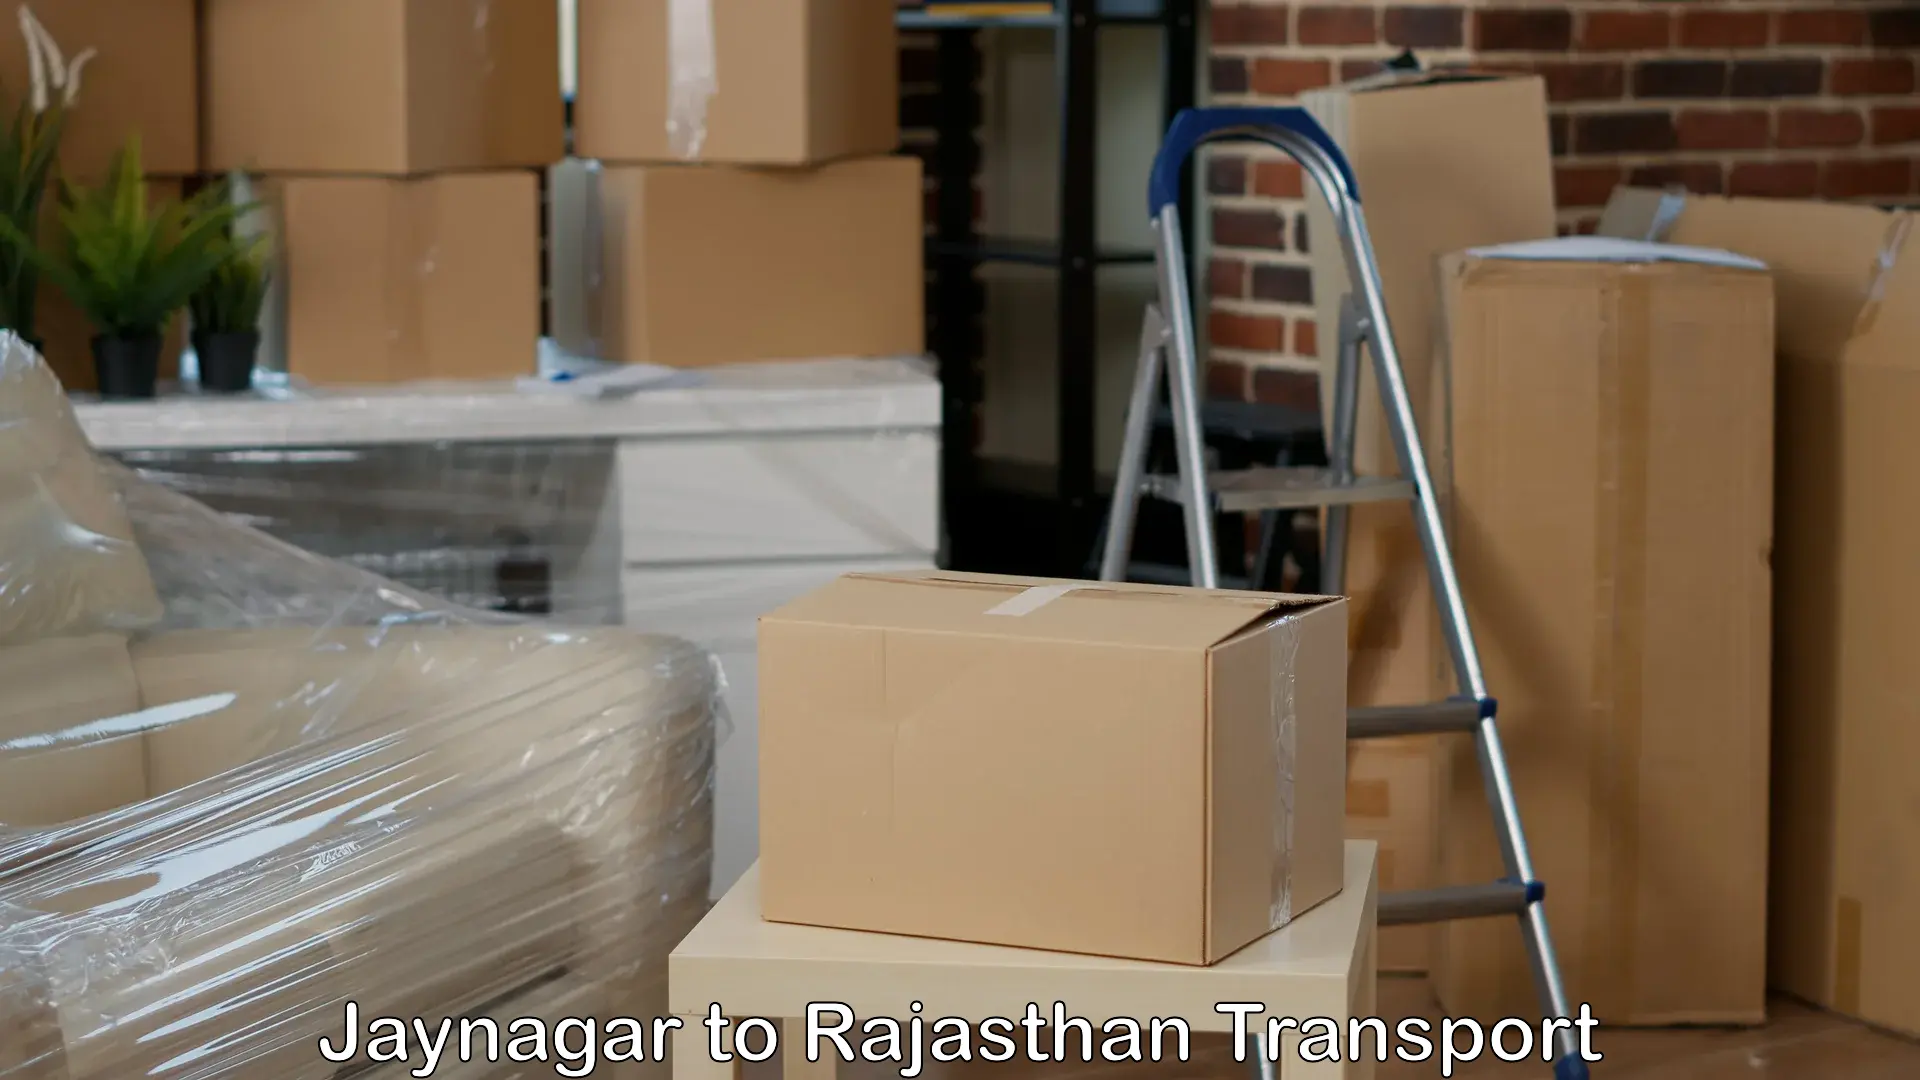 Interstate transport services Jaynagar to Rajasthan